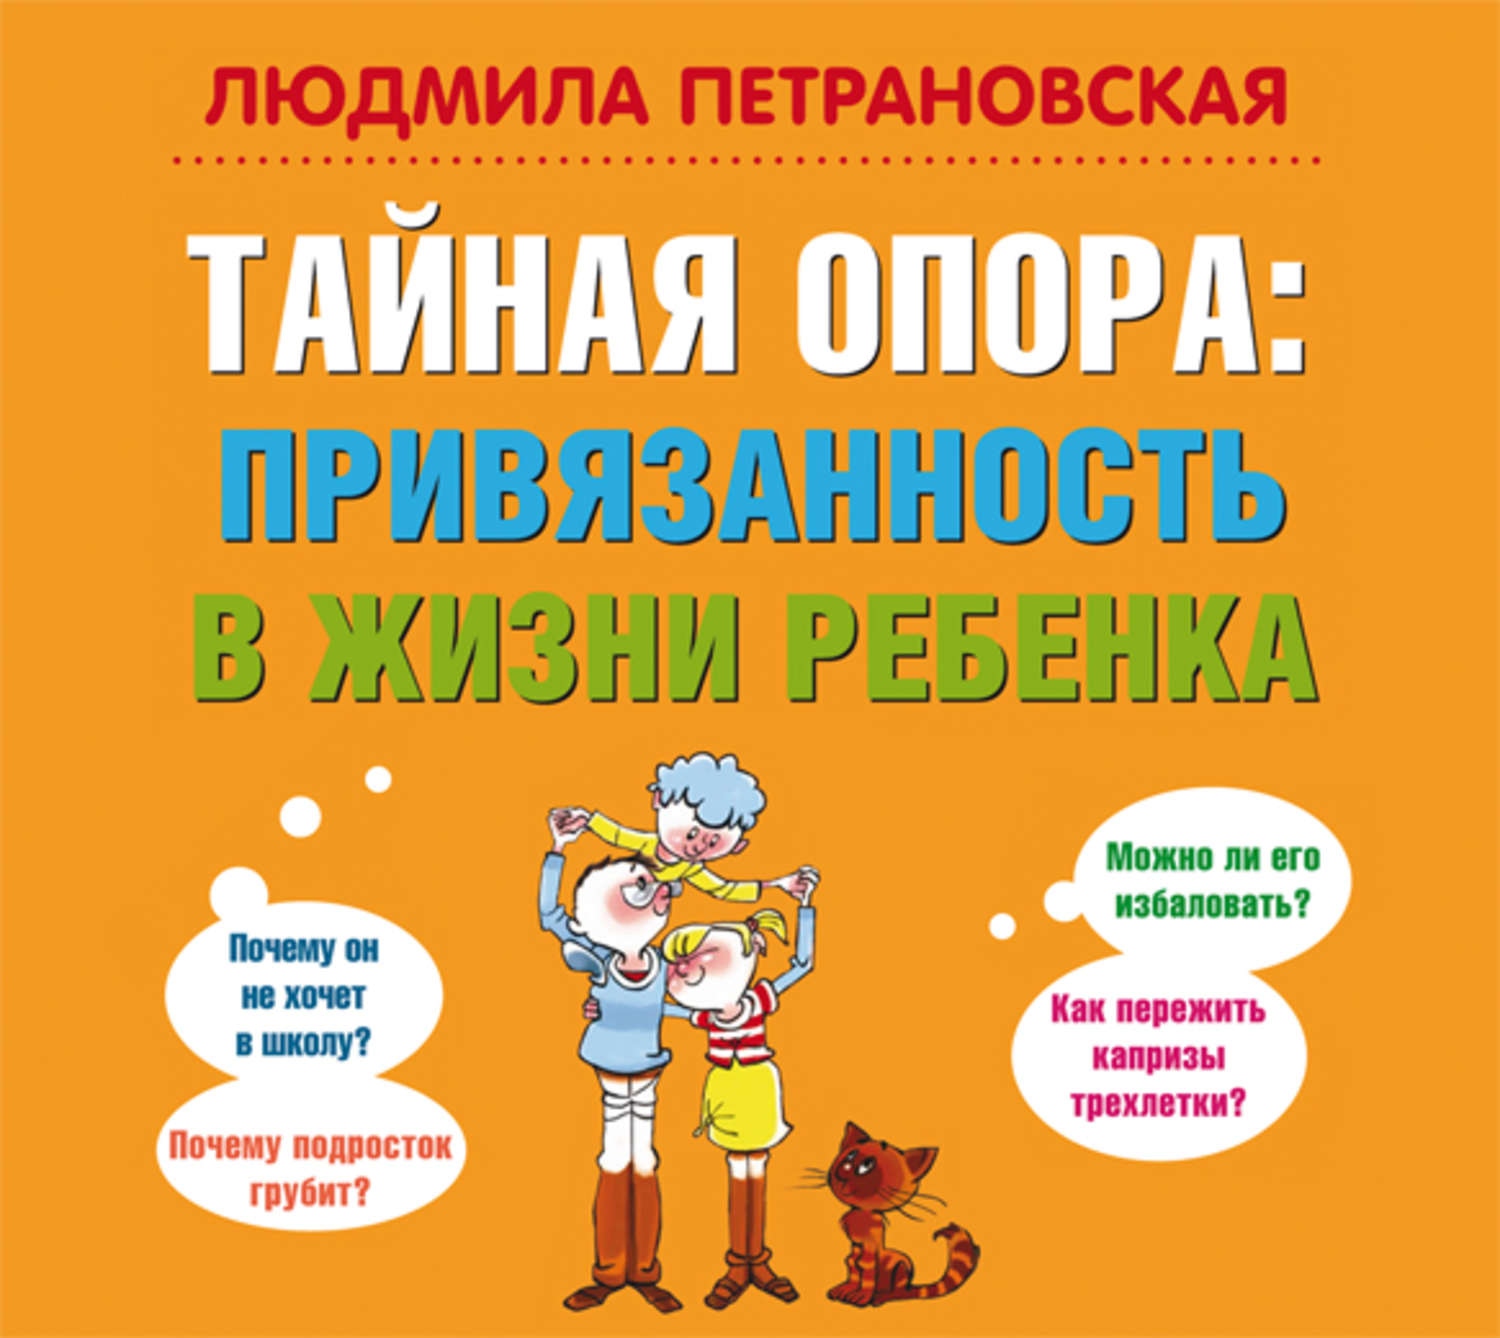 Петрановская все книги скачать бесплатно